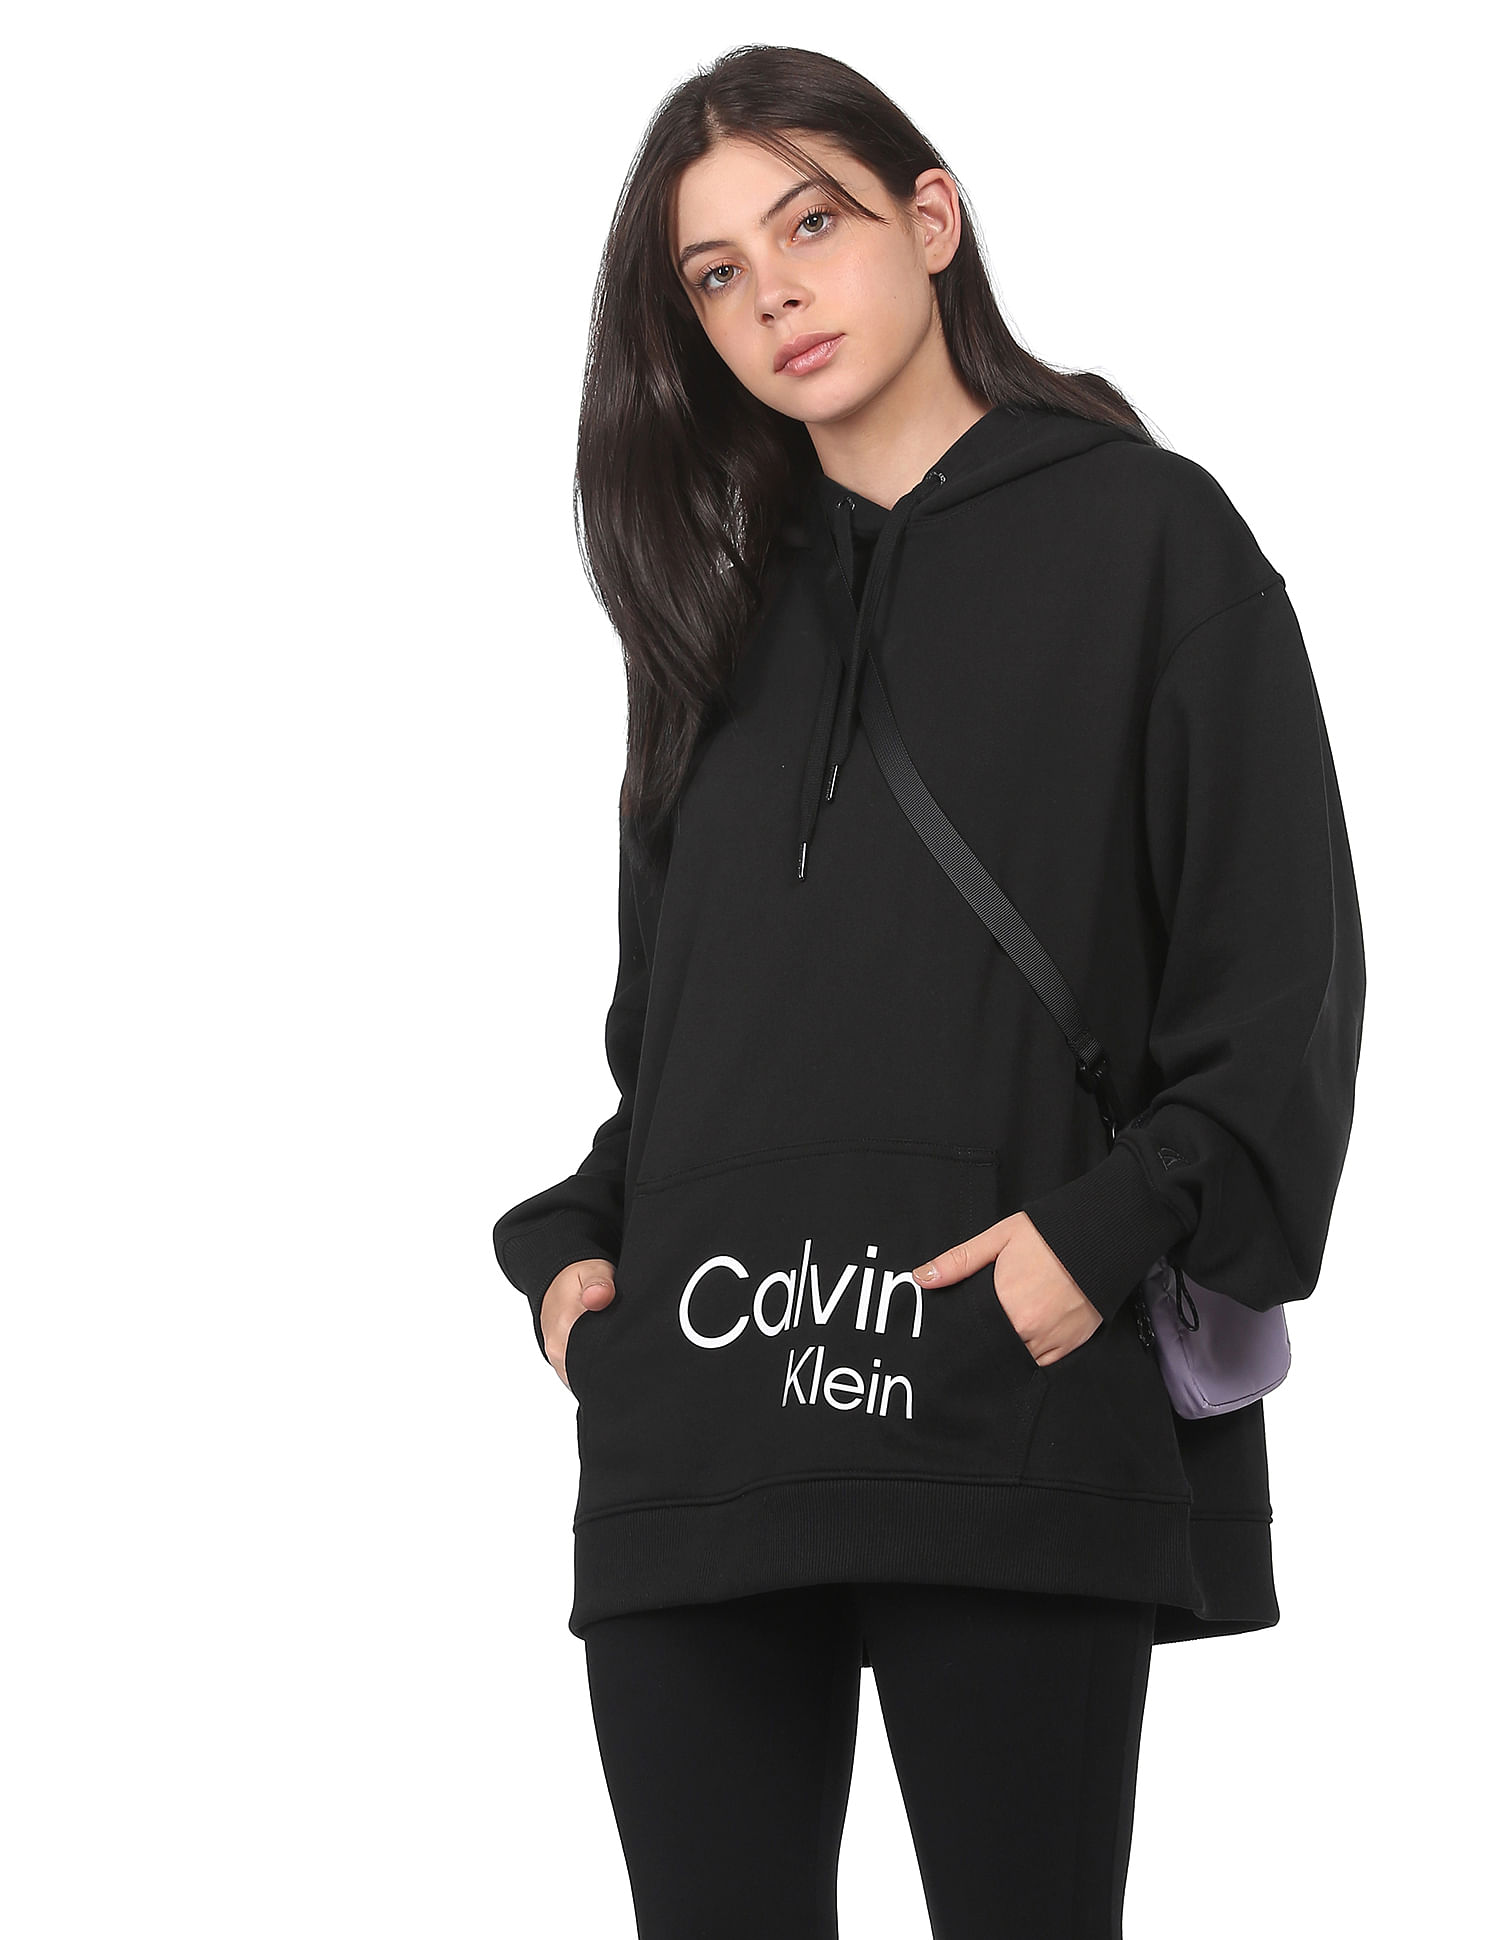 Buy Calvin Klein Jeans Women Black Long Sleeve Brand Print Hooded Sweatshirt  